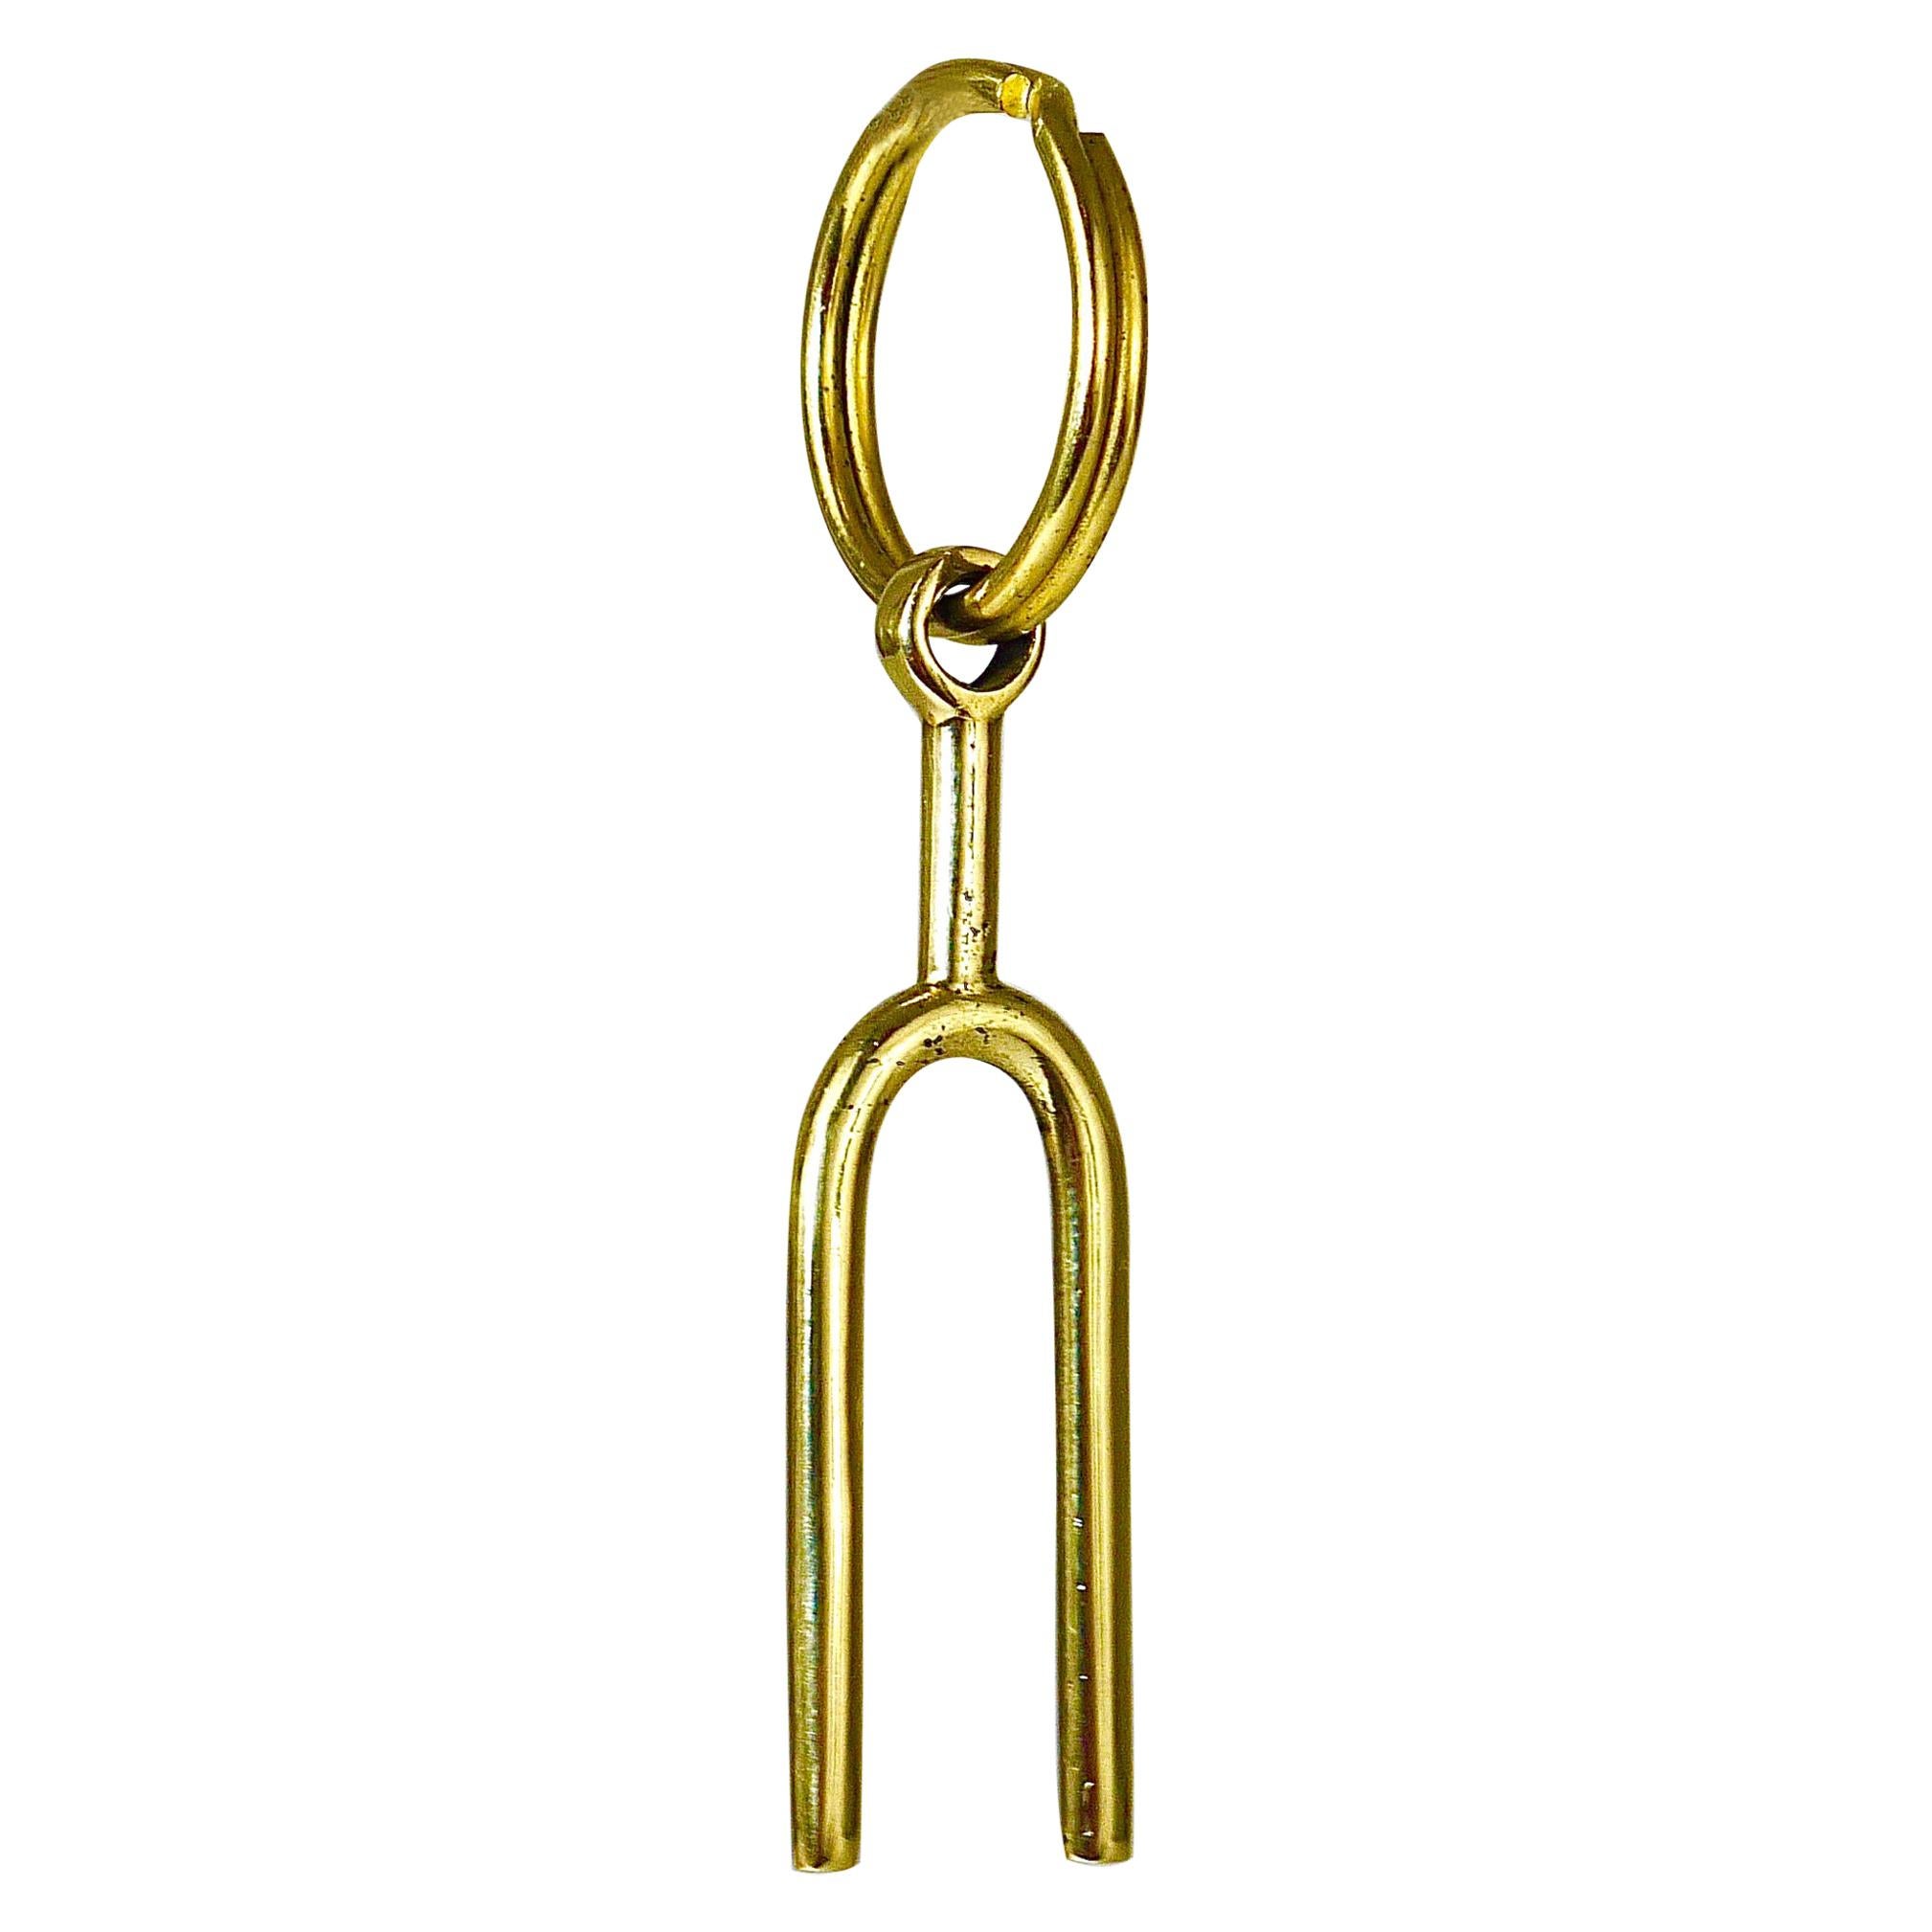 Carl Auböck Midcentury Tuning Fork Handmade Key Ring Chain Holder For Sale